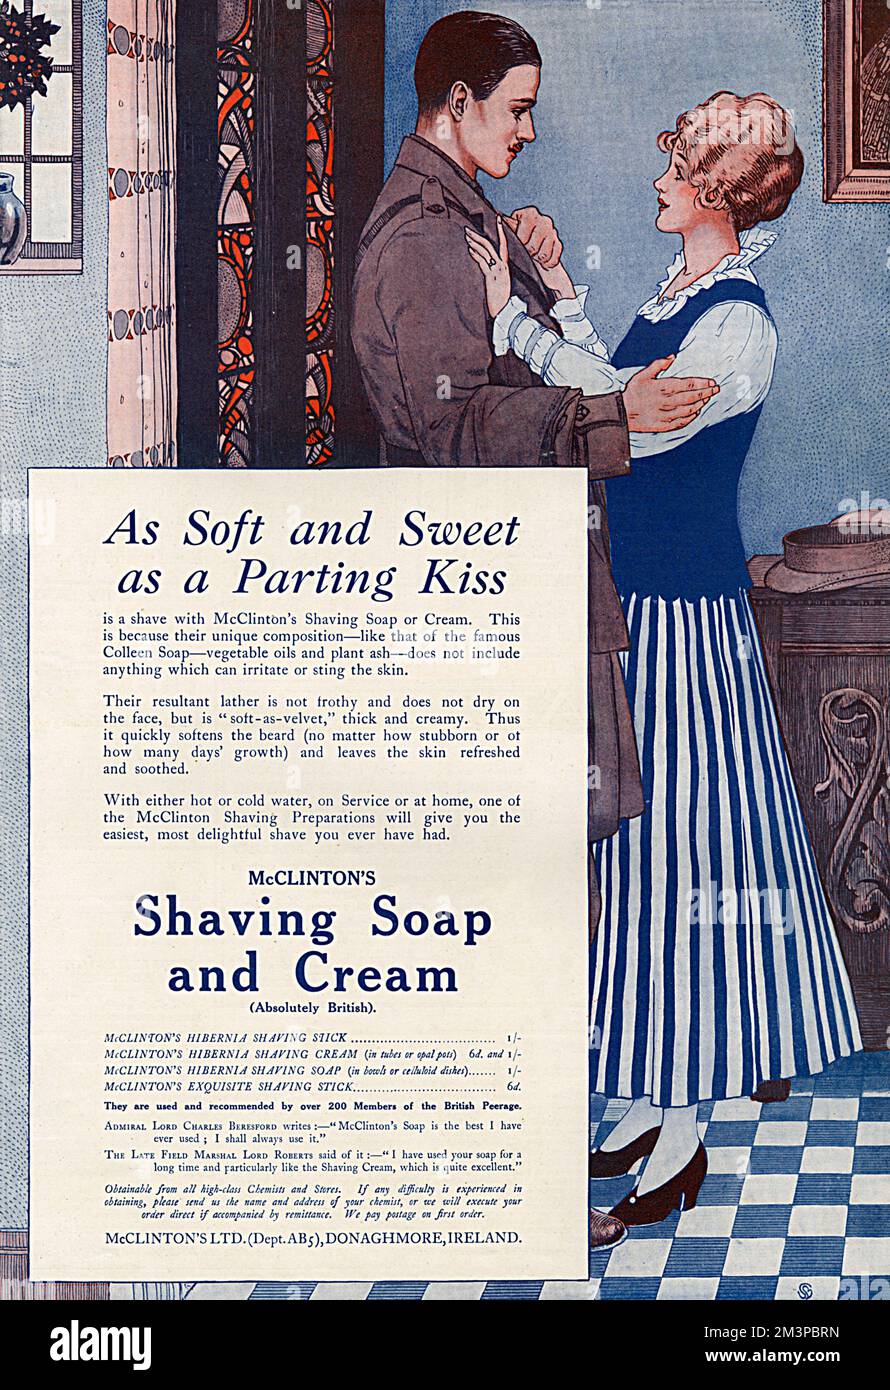 Werbung für McClinton's Shaving Soap and Cream aus der Zeit des Ersten Weltkriegs. Die Seife zeigt einen gut aussehenden und gepflegten Soldaten, der sich von seiner Frau oder seinem Schatz verabschiedet, bevor er zur Front geht. Sie ist „weich und süß wie ein Abschiedskuss“. Datum: 1916 Stockfoto